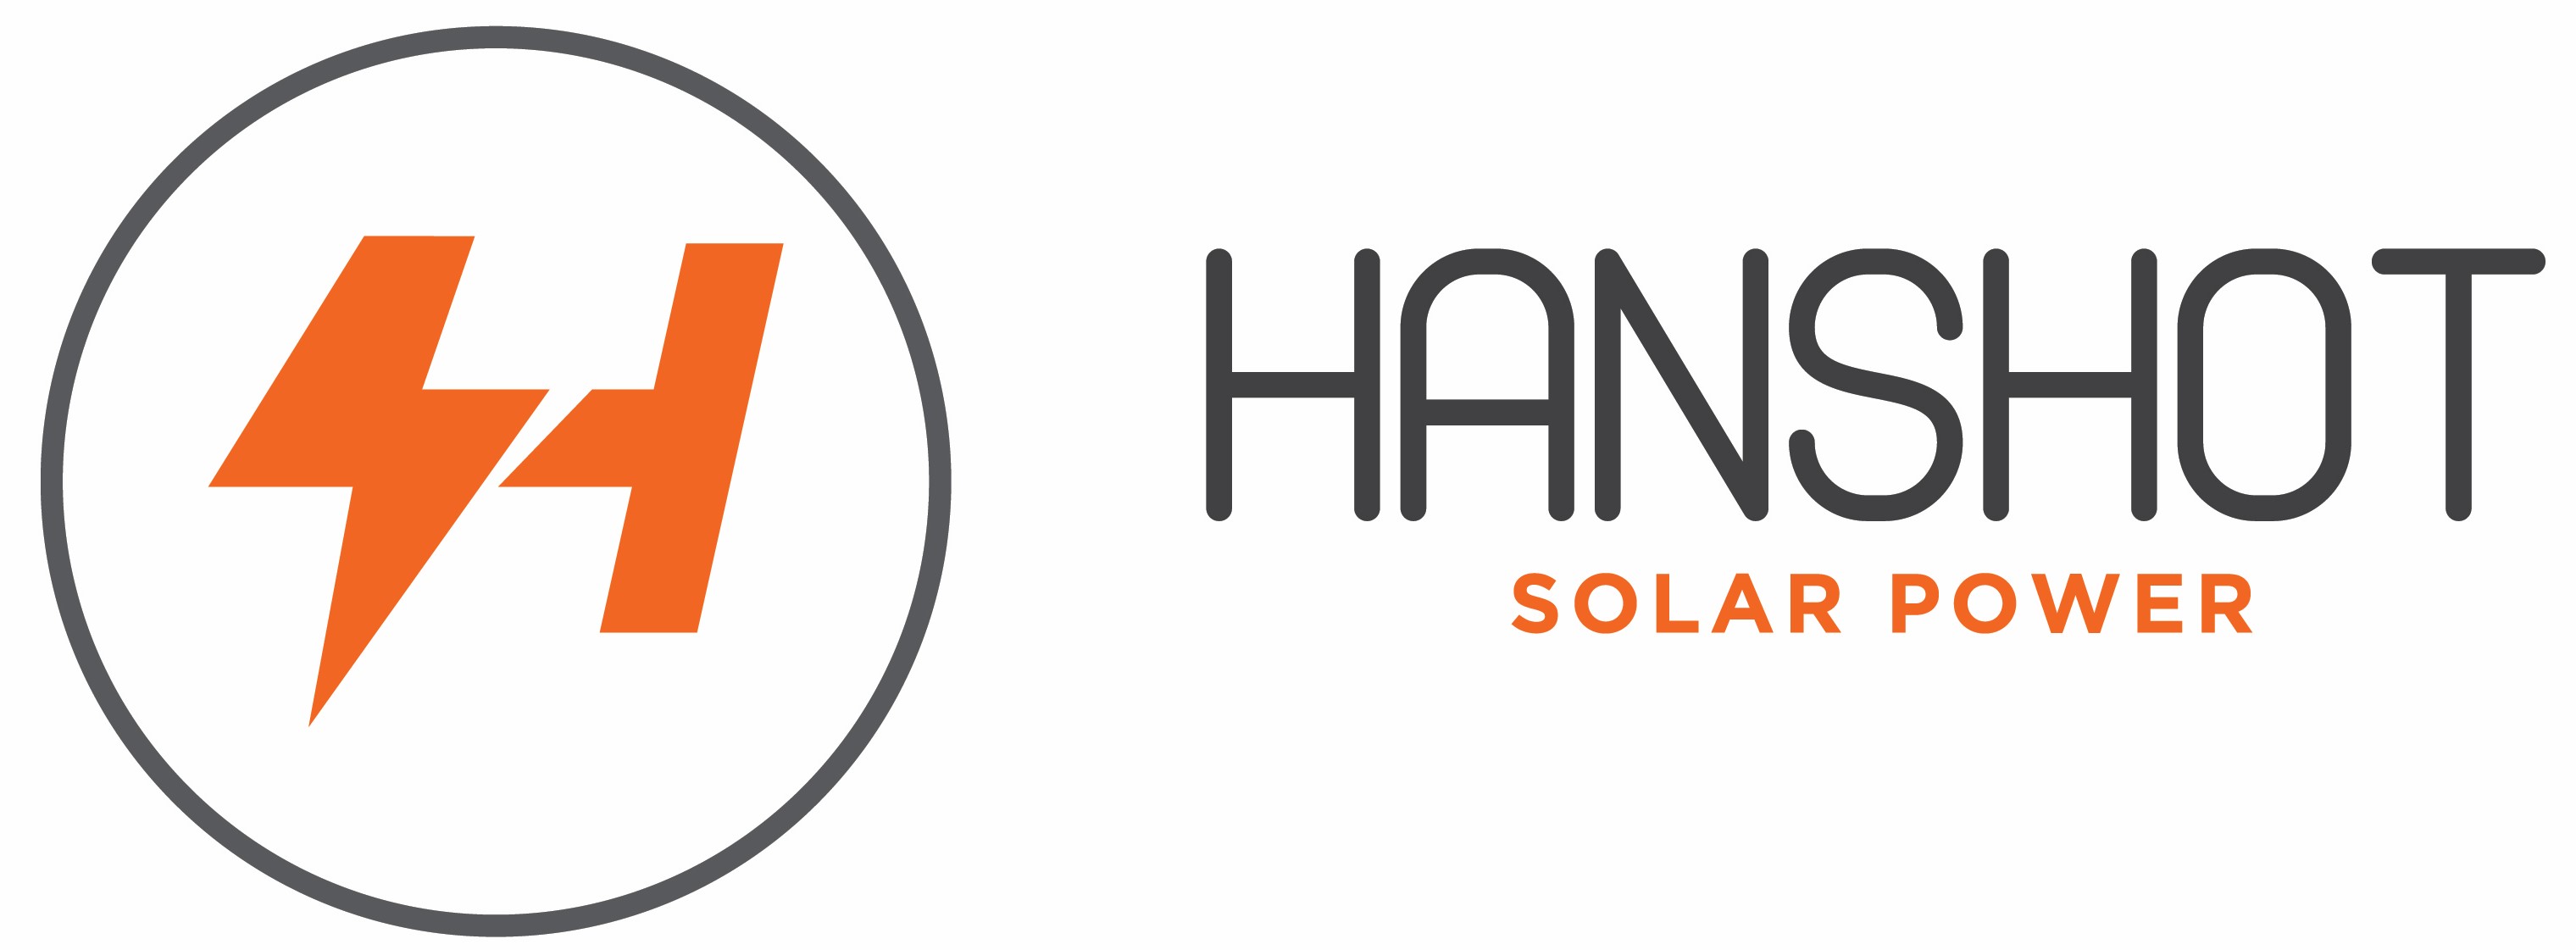 Hanshot Solar